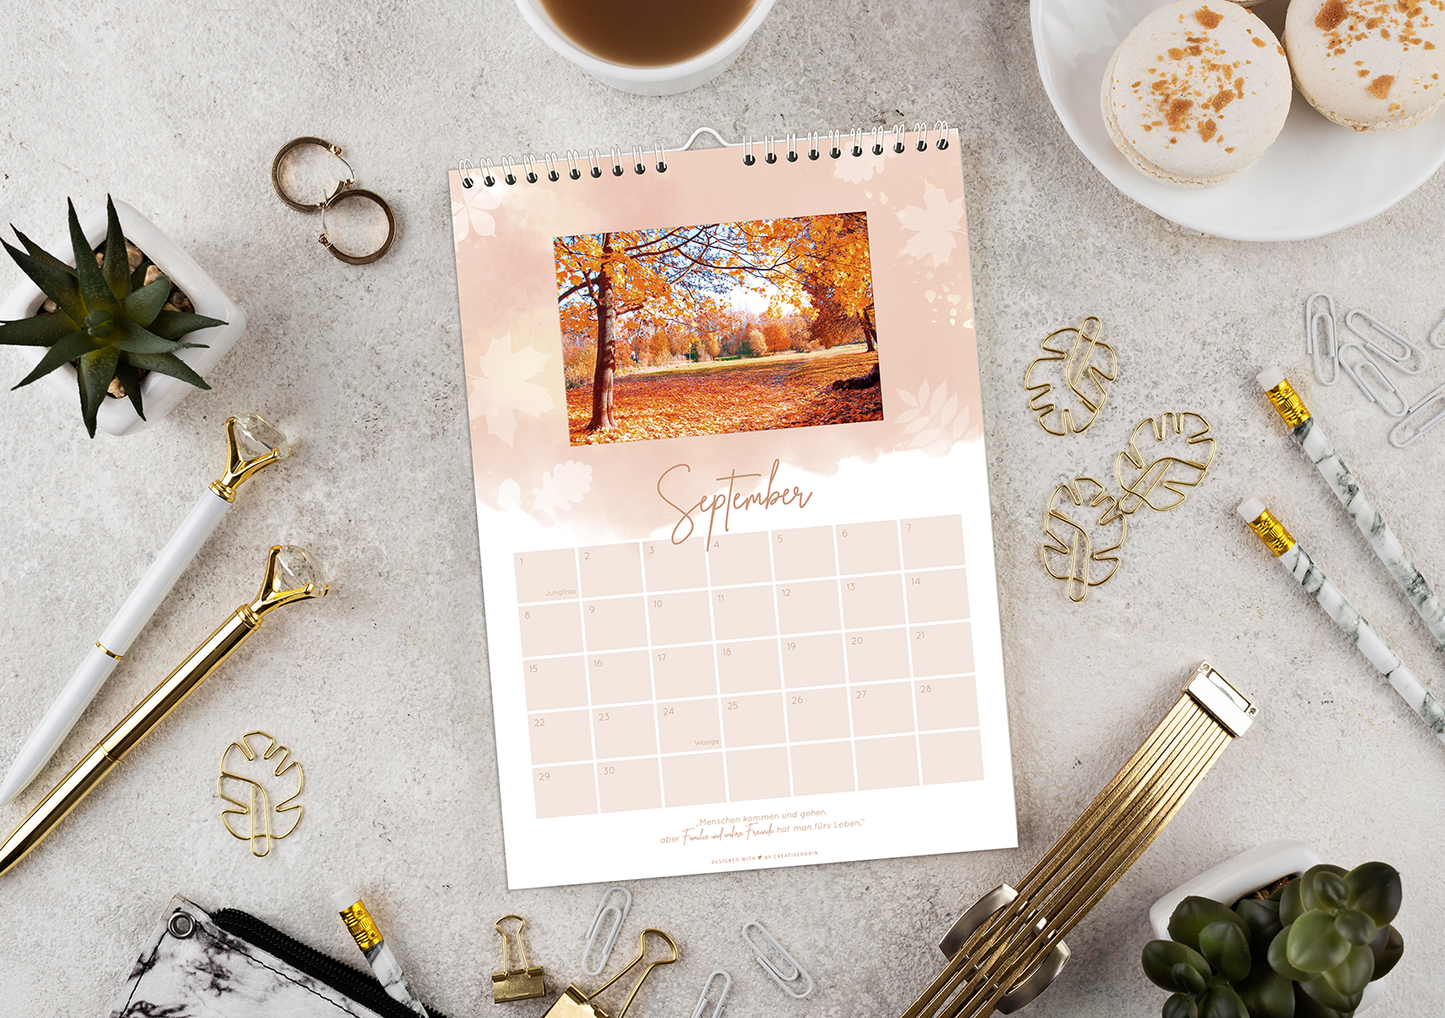 Fotokalender & Bastelkalender mit charmanten Sprüchen auf allen Seiten I Jahresunabhängiger Wandkalender